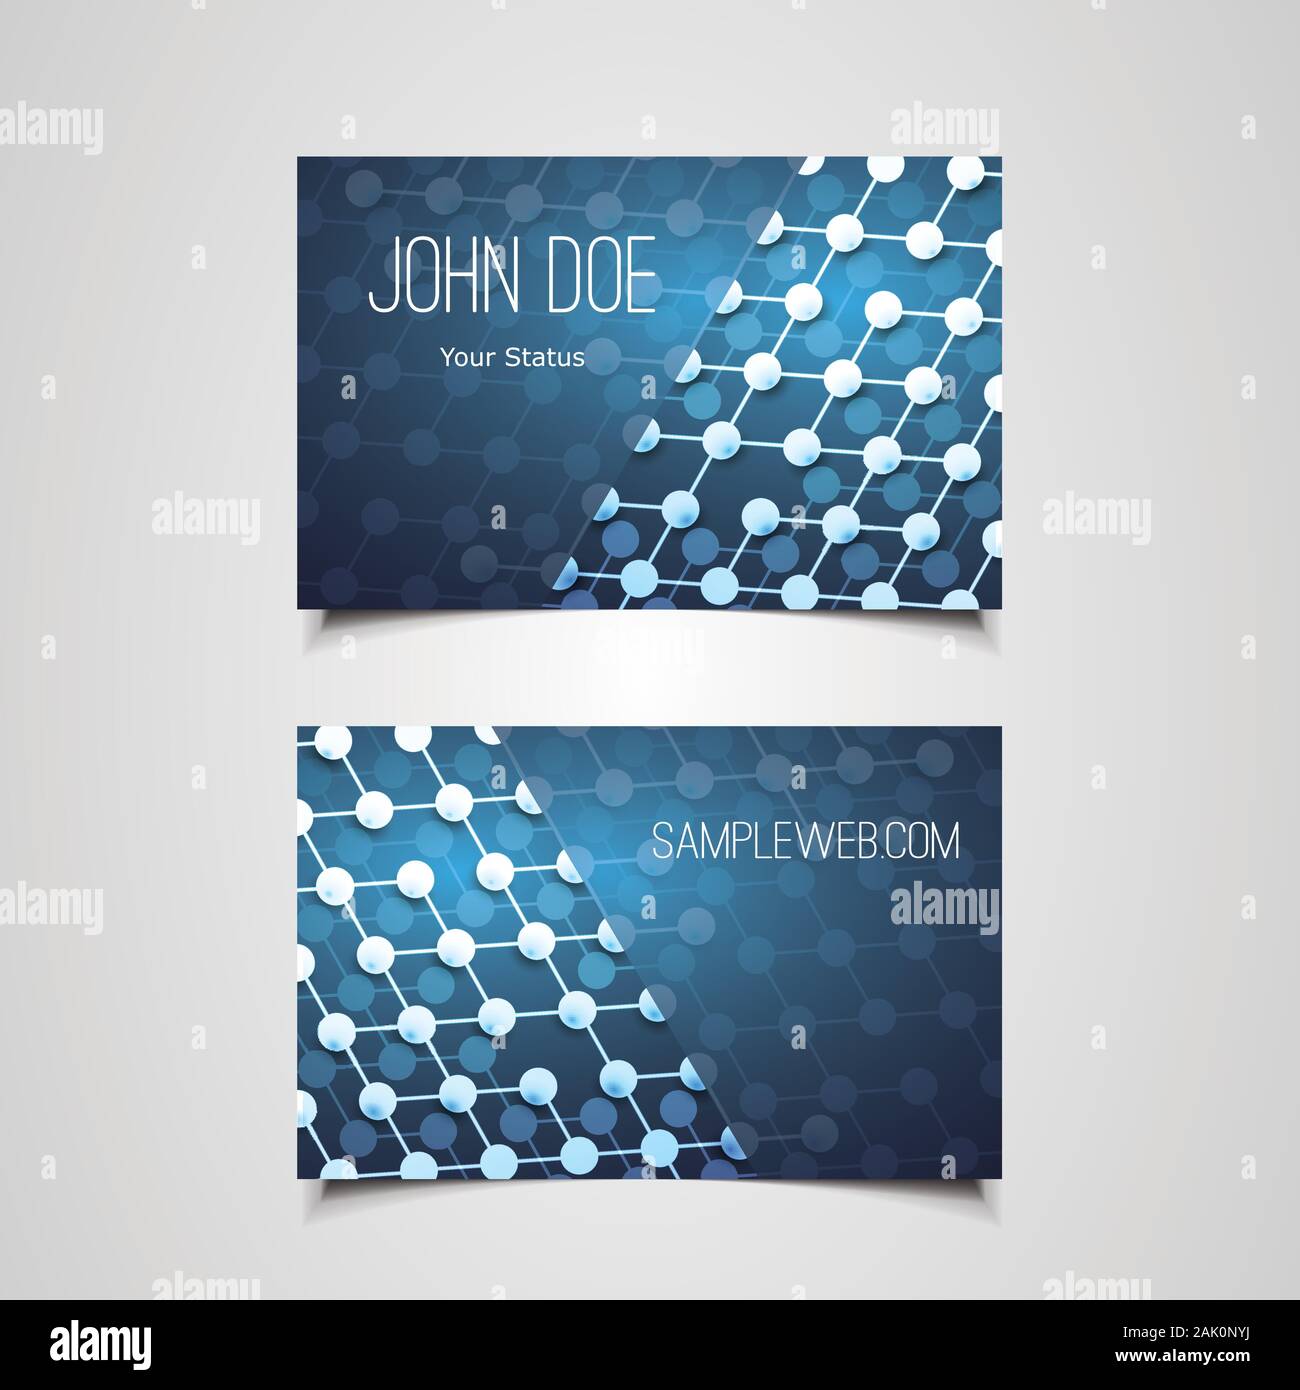 john doe abstract | Greeting Card